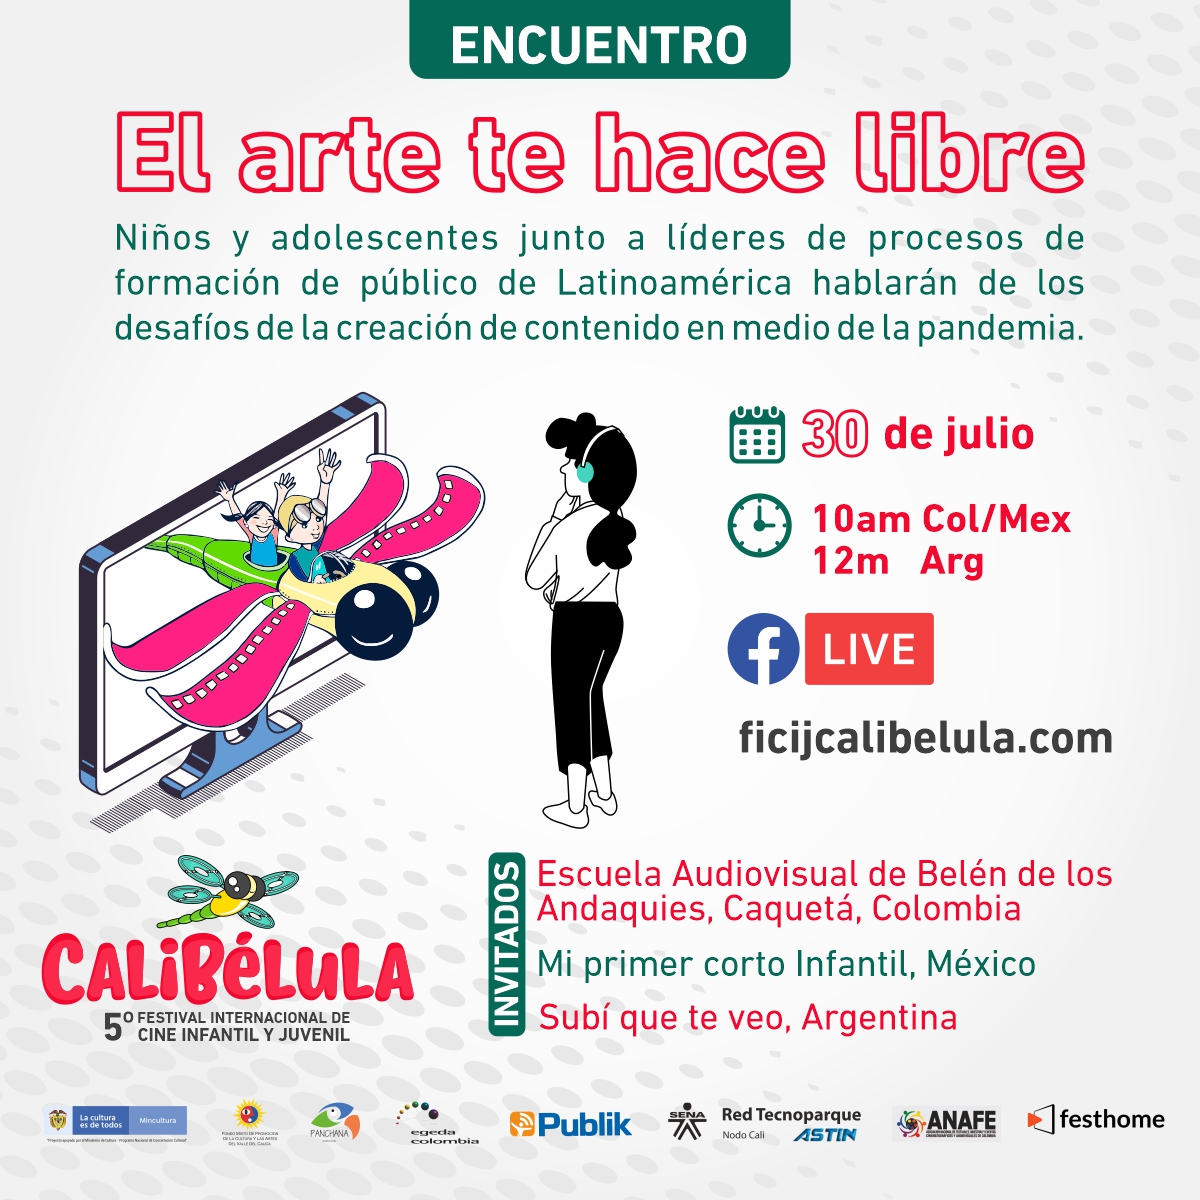 Gran encuentro latinoamericano por la infancia y la adolescencia, lidera Calibelula